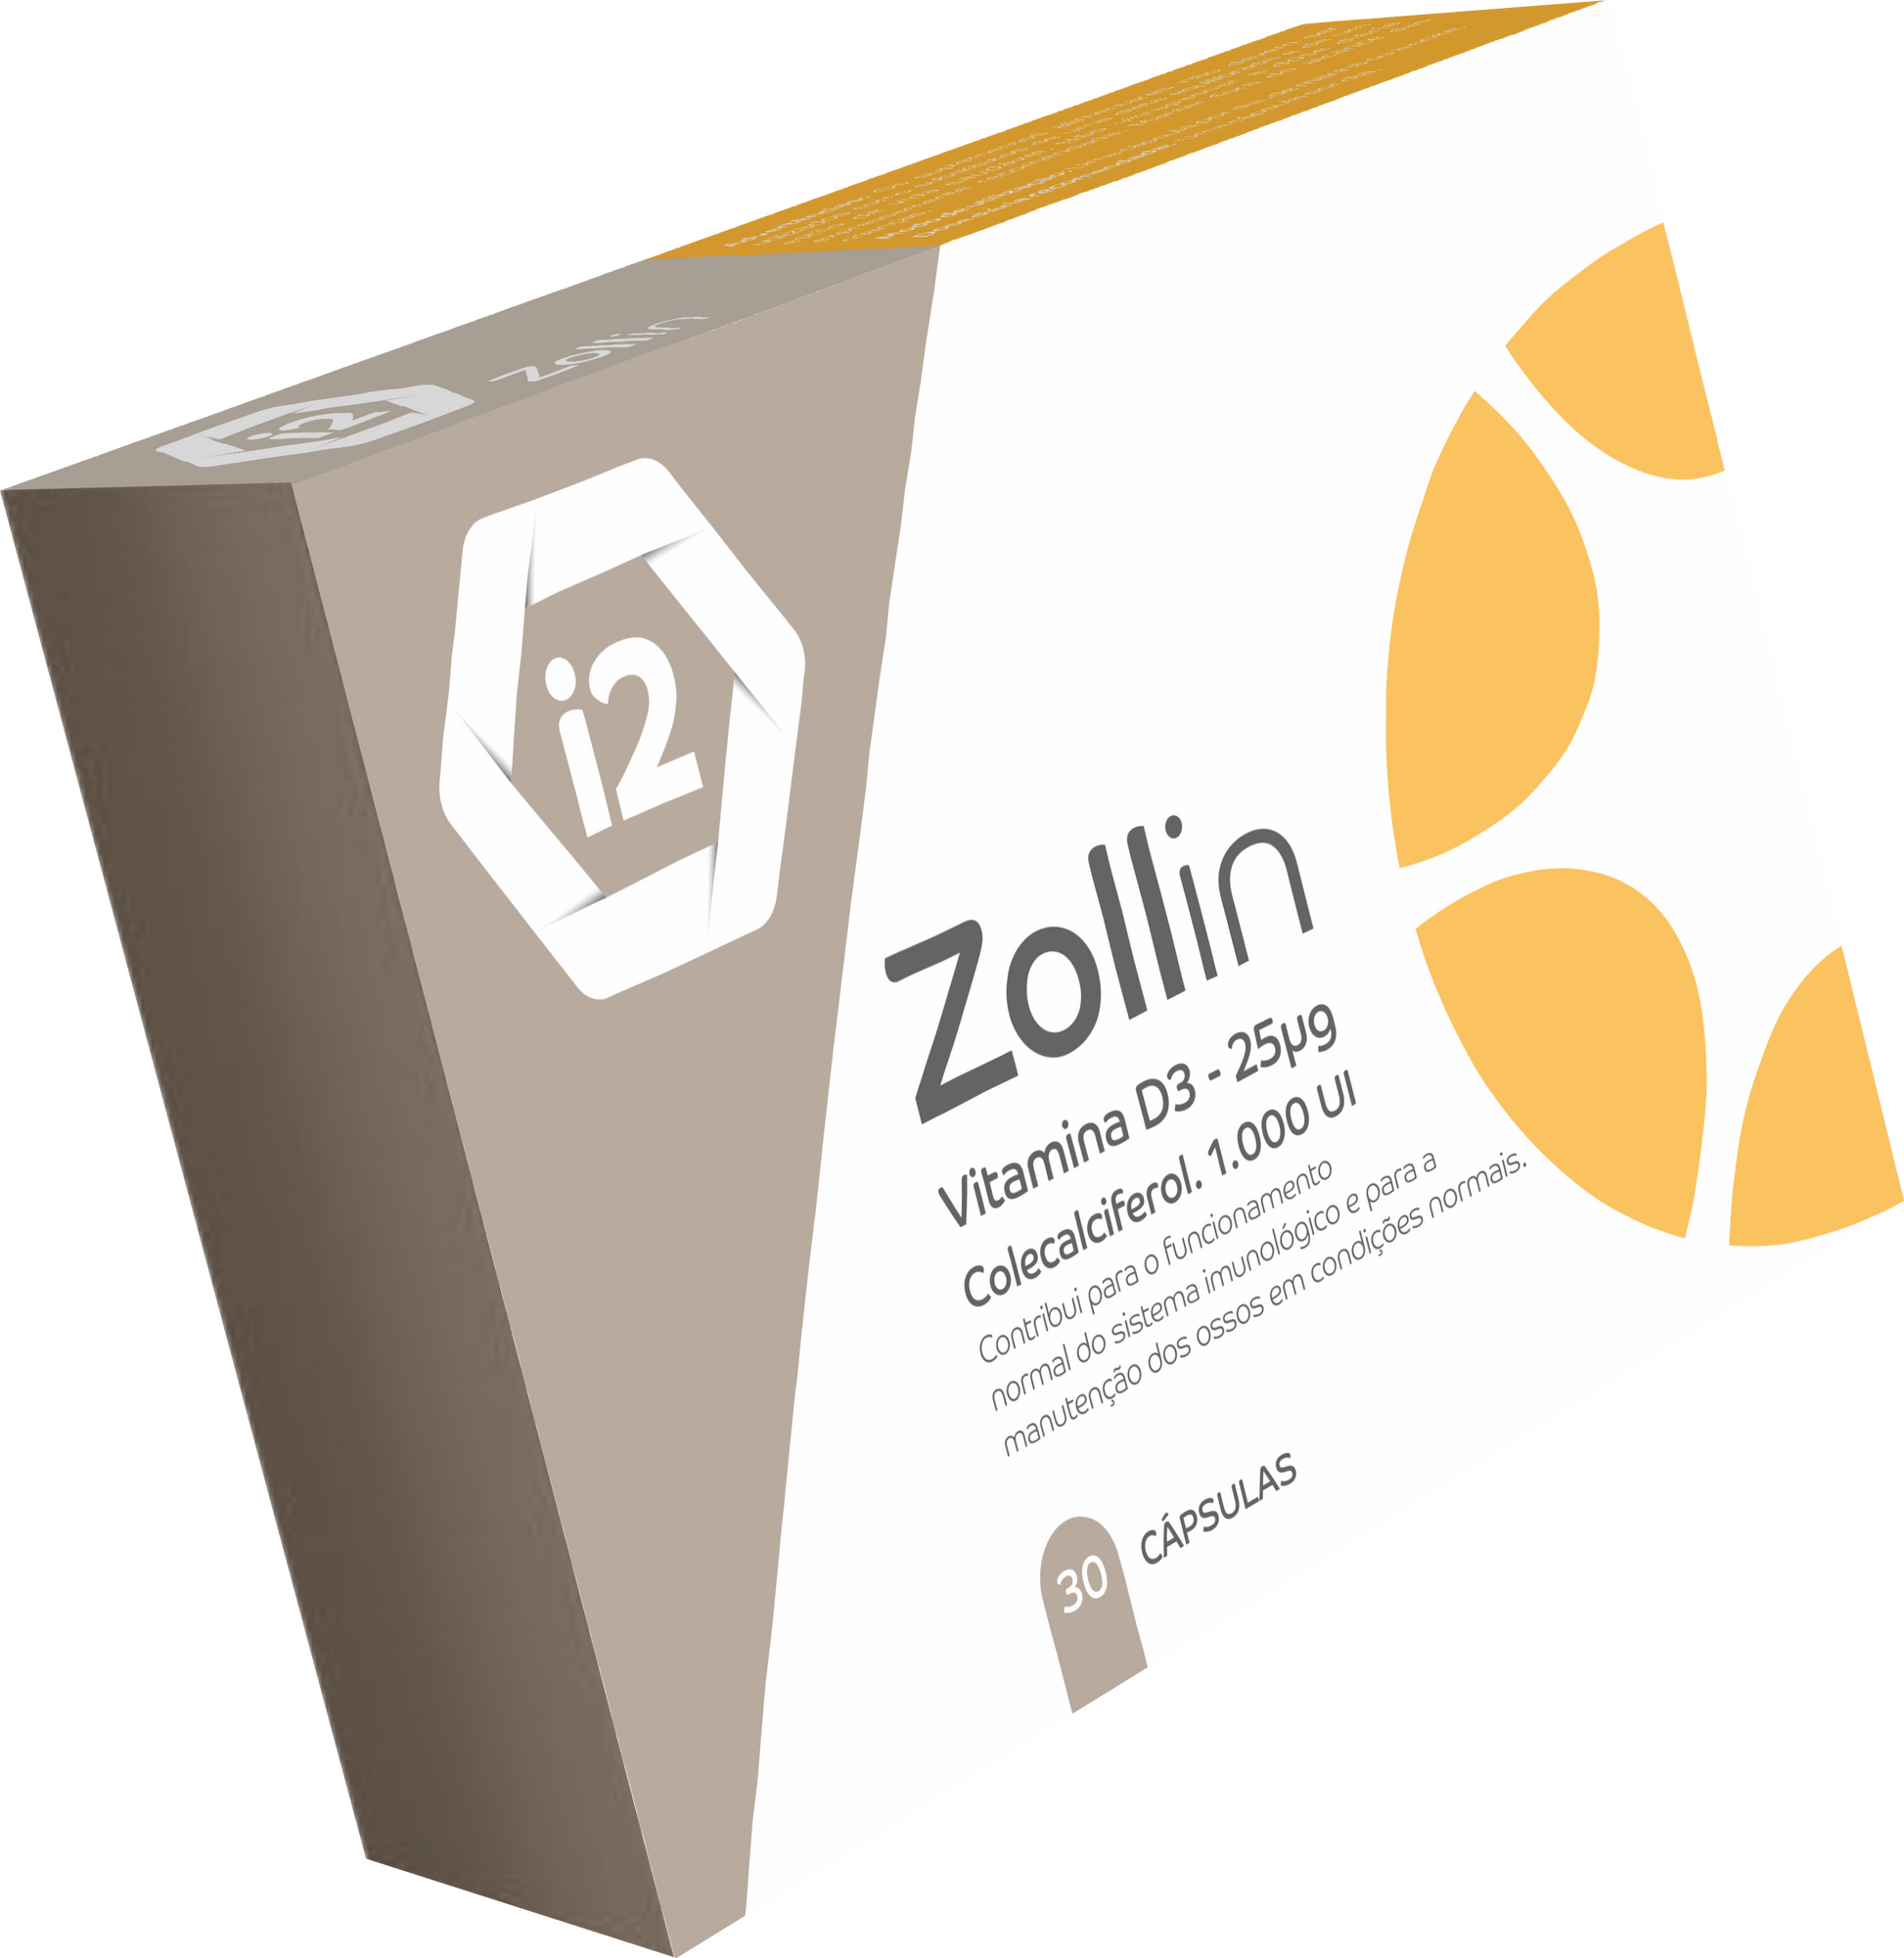 Caixa zollin para melhorar a qualidade de vida dos doentes, ajudá-los a manter níveis ósseos normais, melhorar a absorção e utilização do cálcio e do fósforo, e manter níveis normais de cálcio no sangue. 